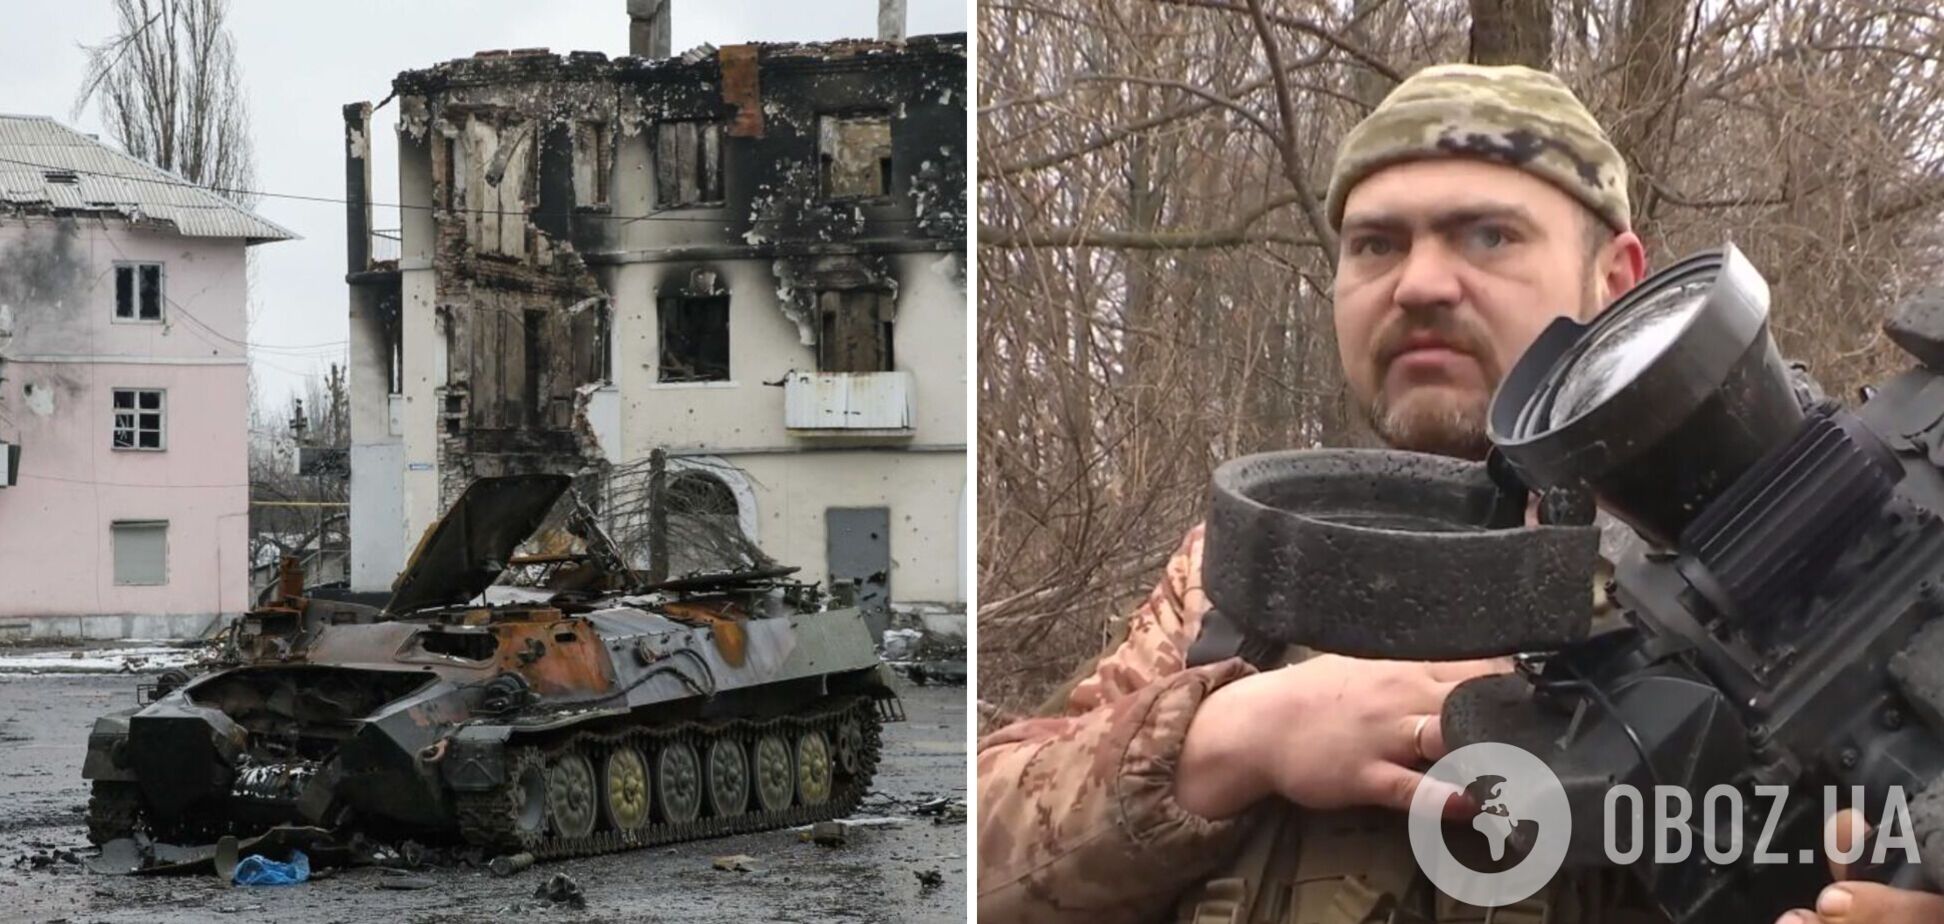 'Будем гнать к границе с невероятной яростью': украинские военные с Javelin в руках передали 'привет' оккупантам. Видео